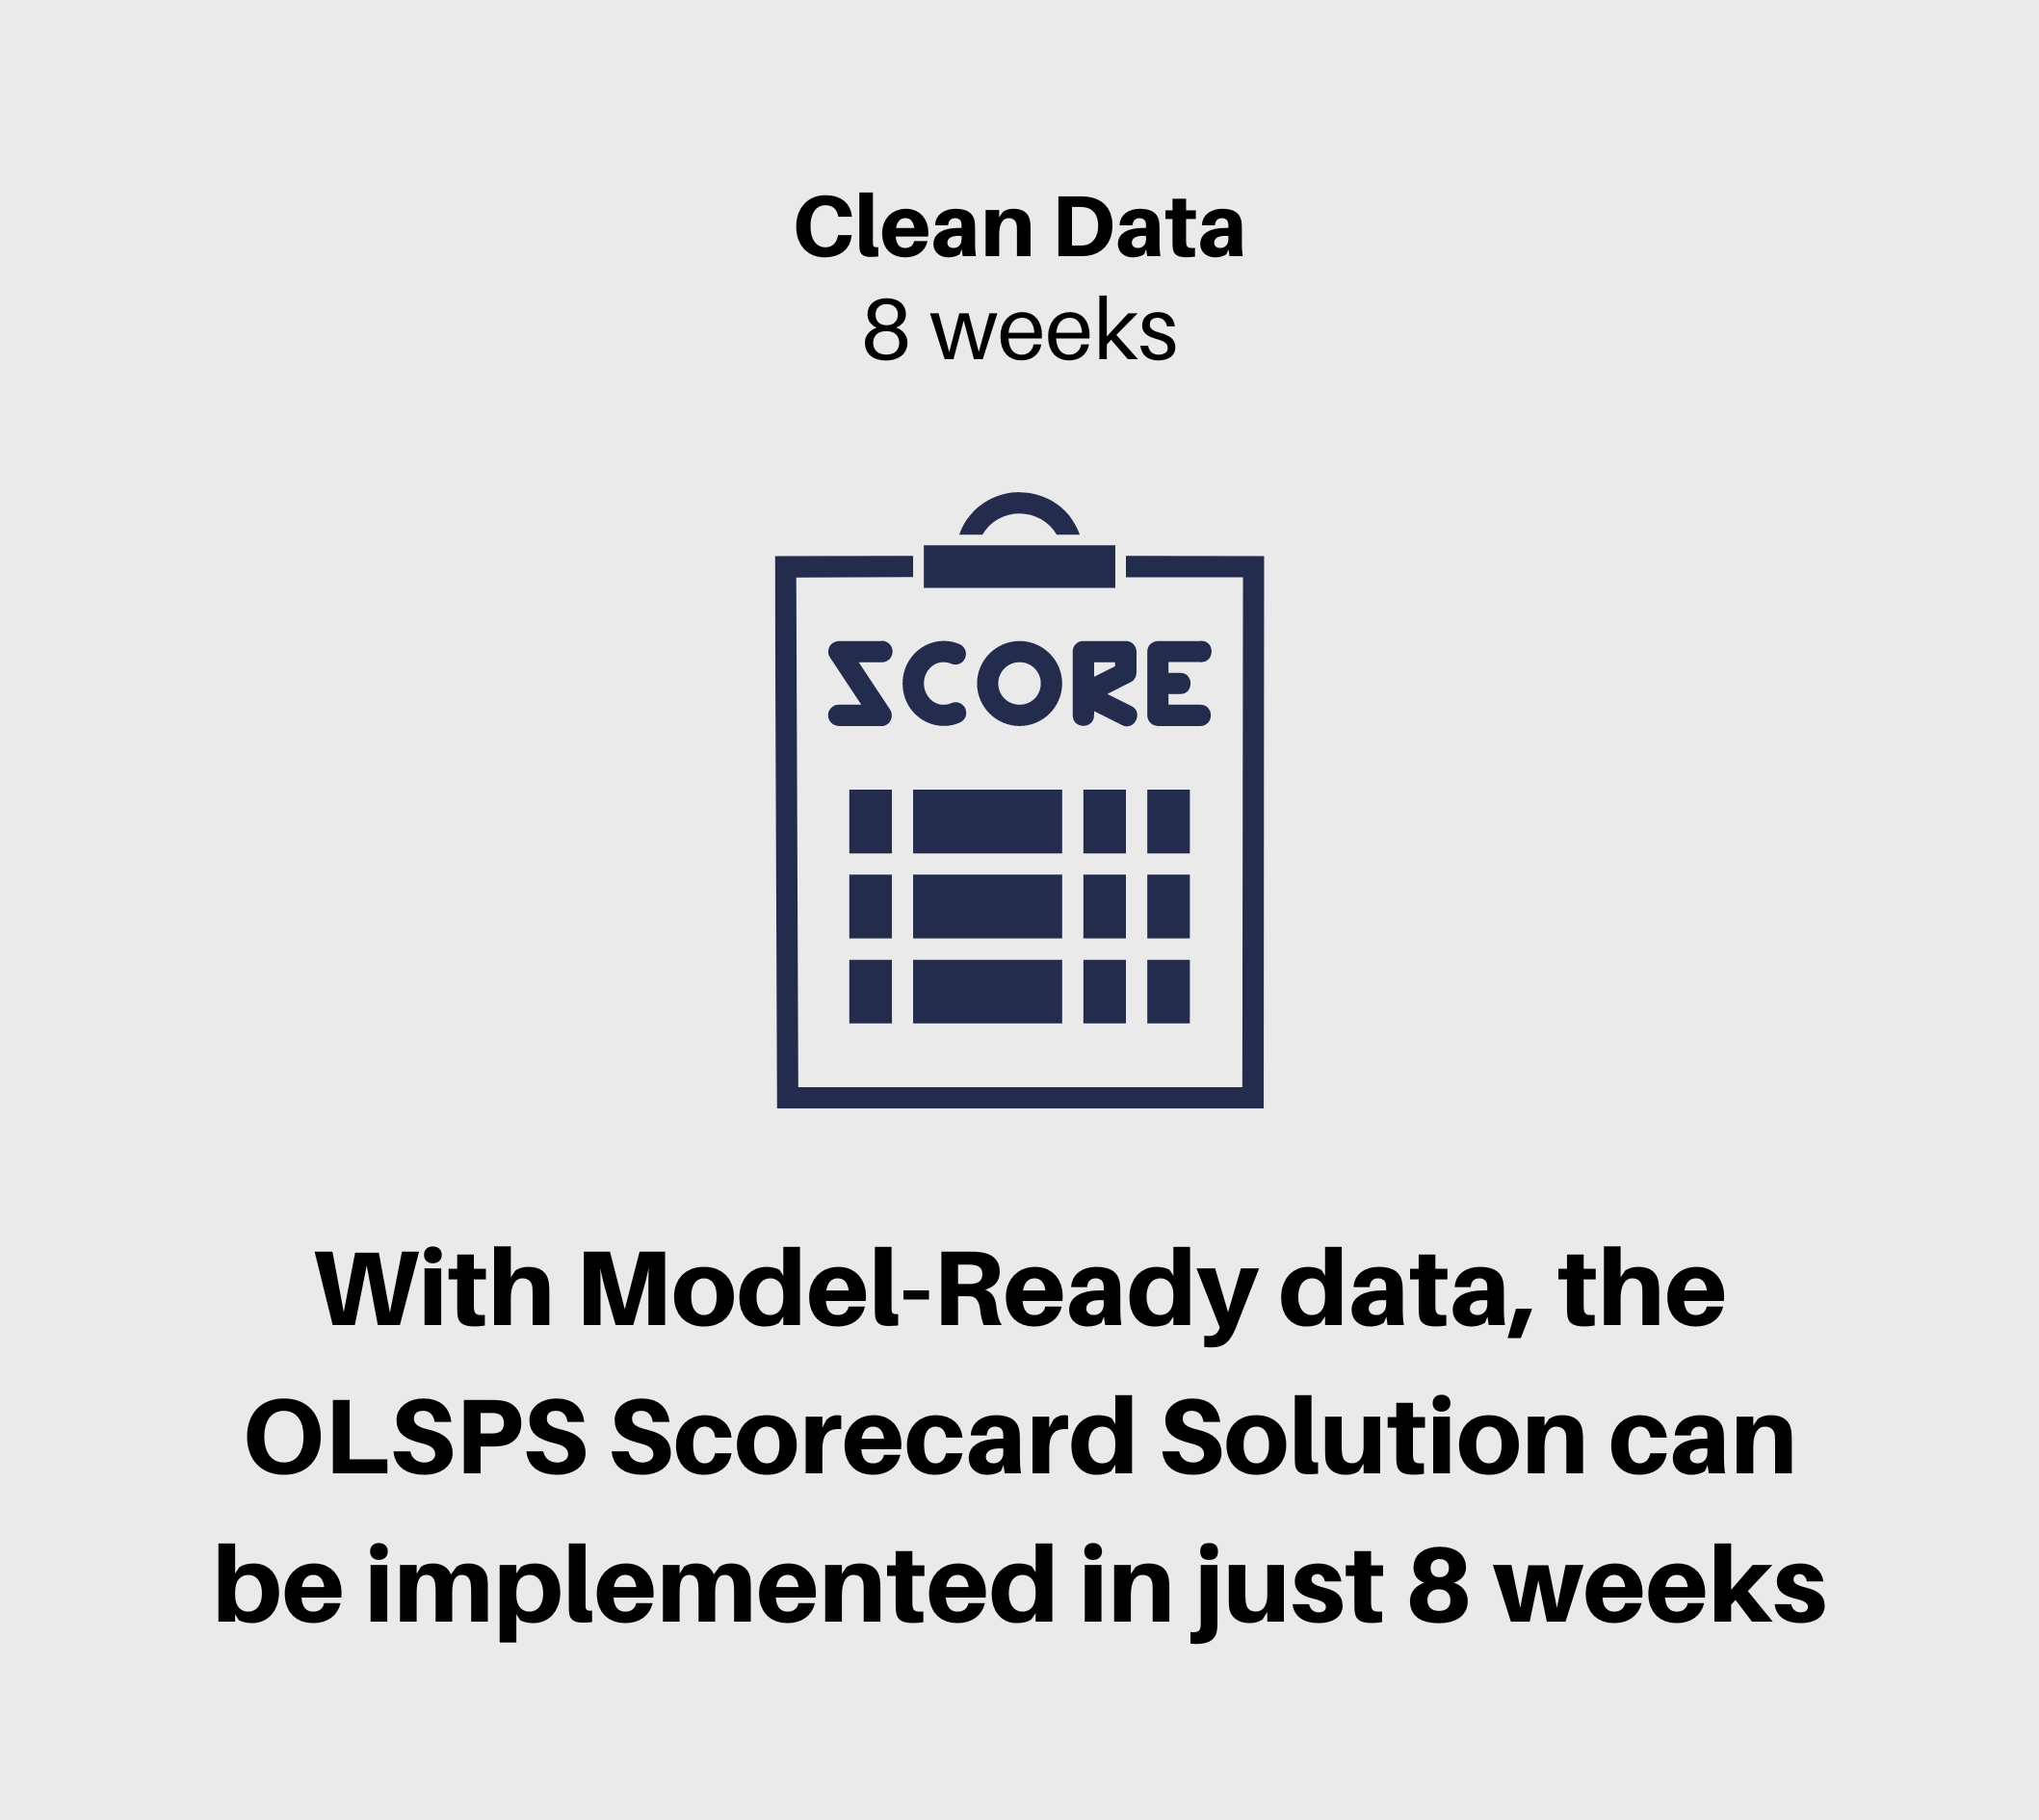 OLSPS Scorecard Solution